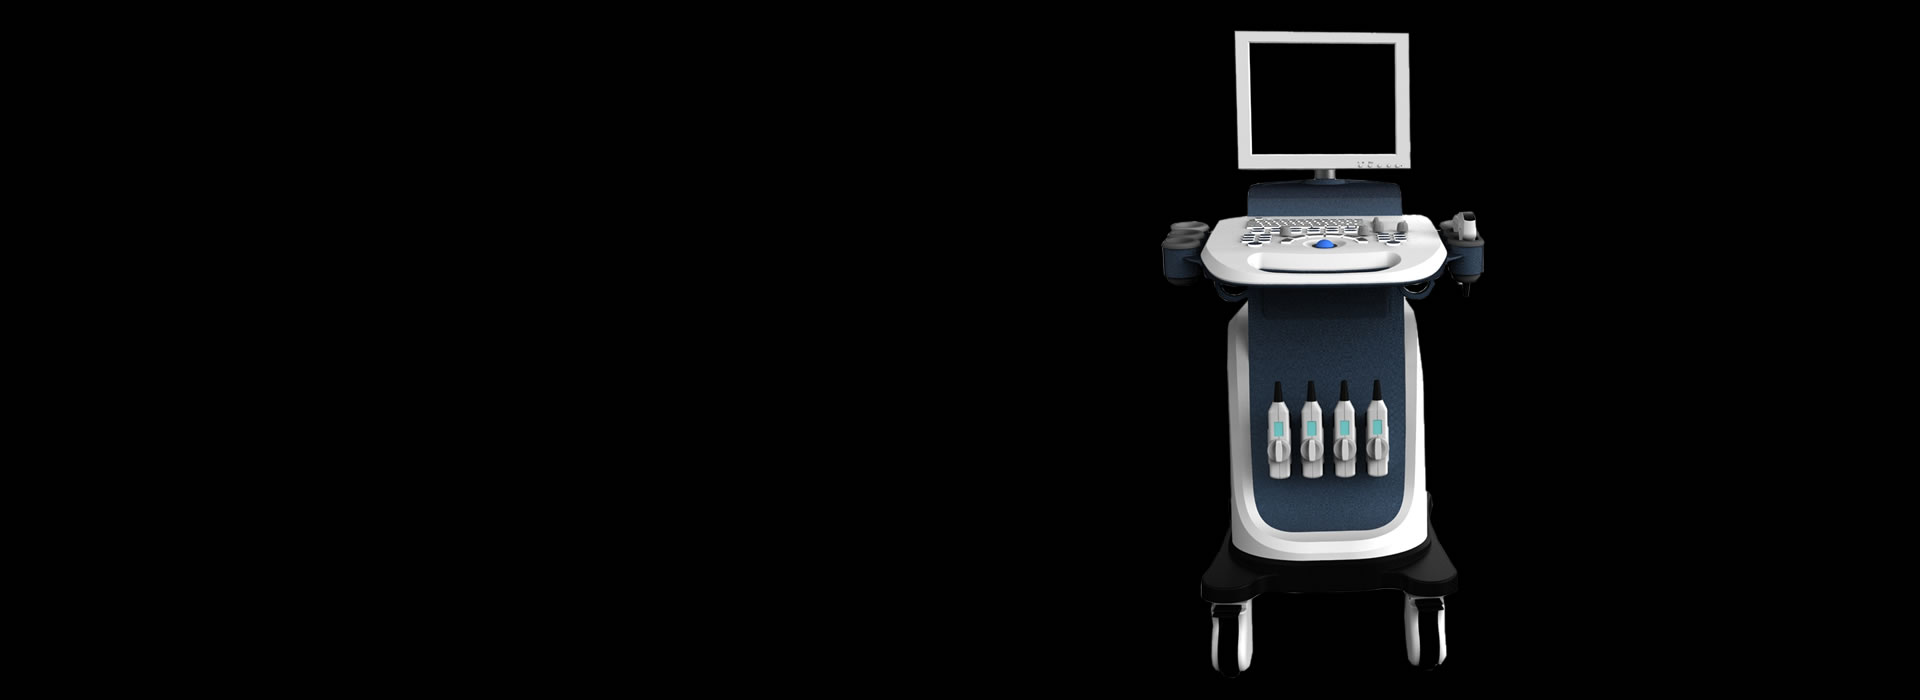 XF-7800彩色多普勒超声诊断系统